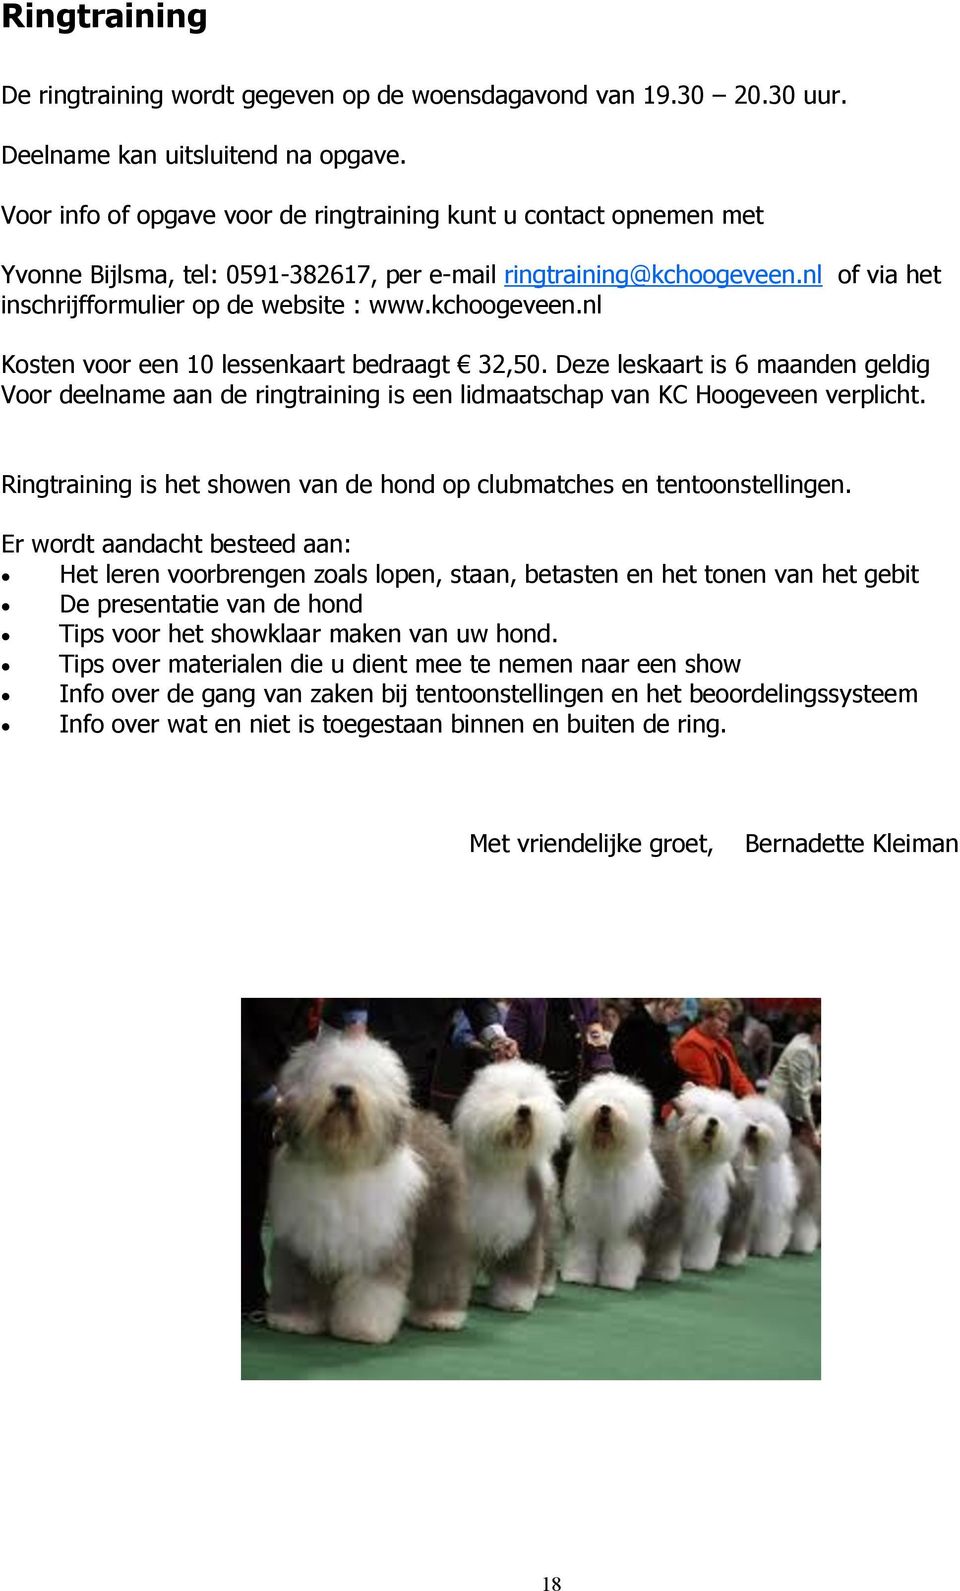 kchoogeveen.nl Kosten voor een 10 lessenkaart bedraagt 32,50. Deze leskaart is 6 maanden geldig Voor deelname aan de ringtraining is een lidmaatschap van KC Hoogeveen verplicht.